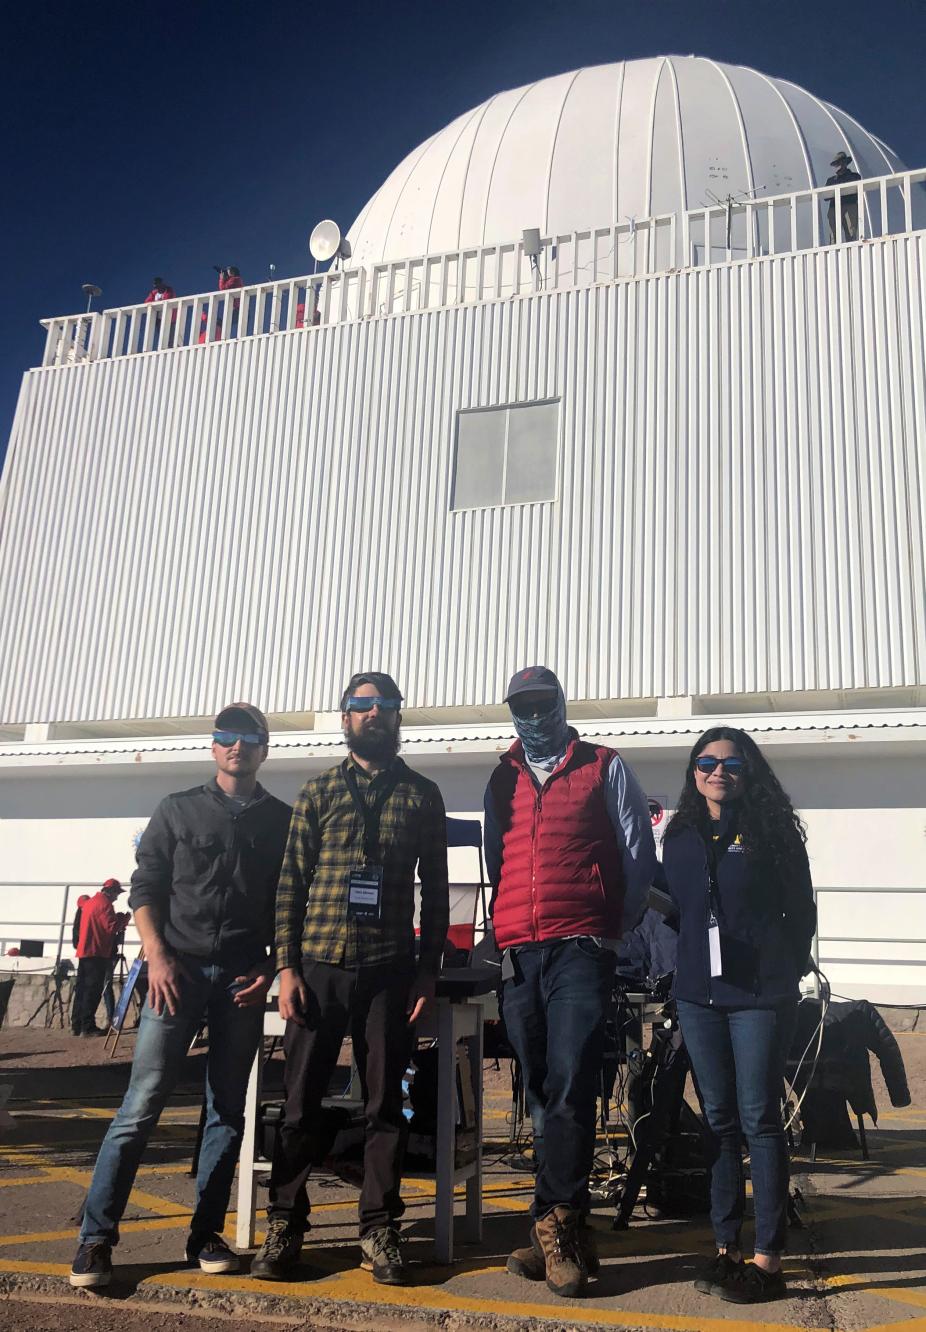 Solar Eclipse Team, Chile, 2019